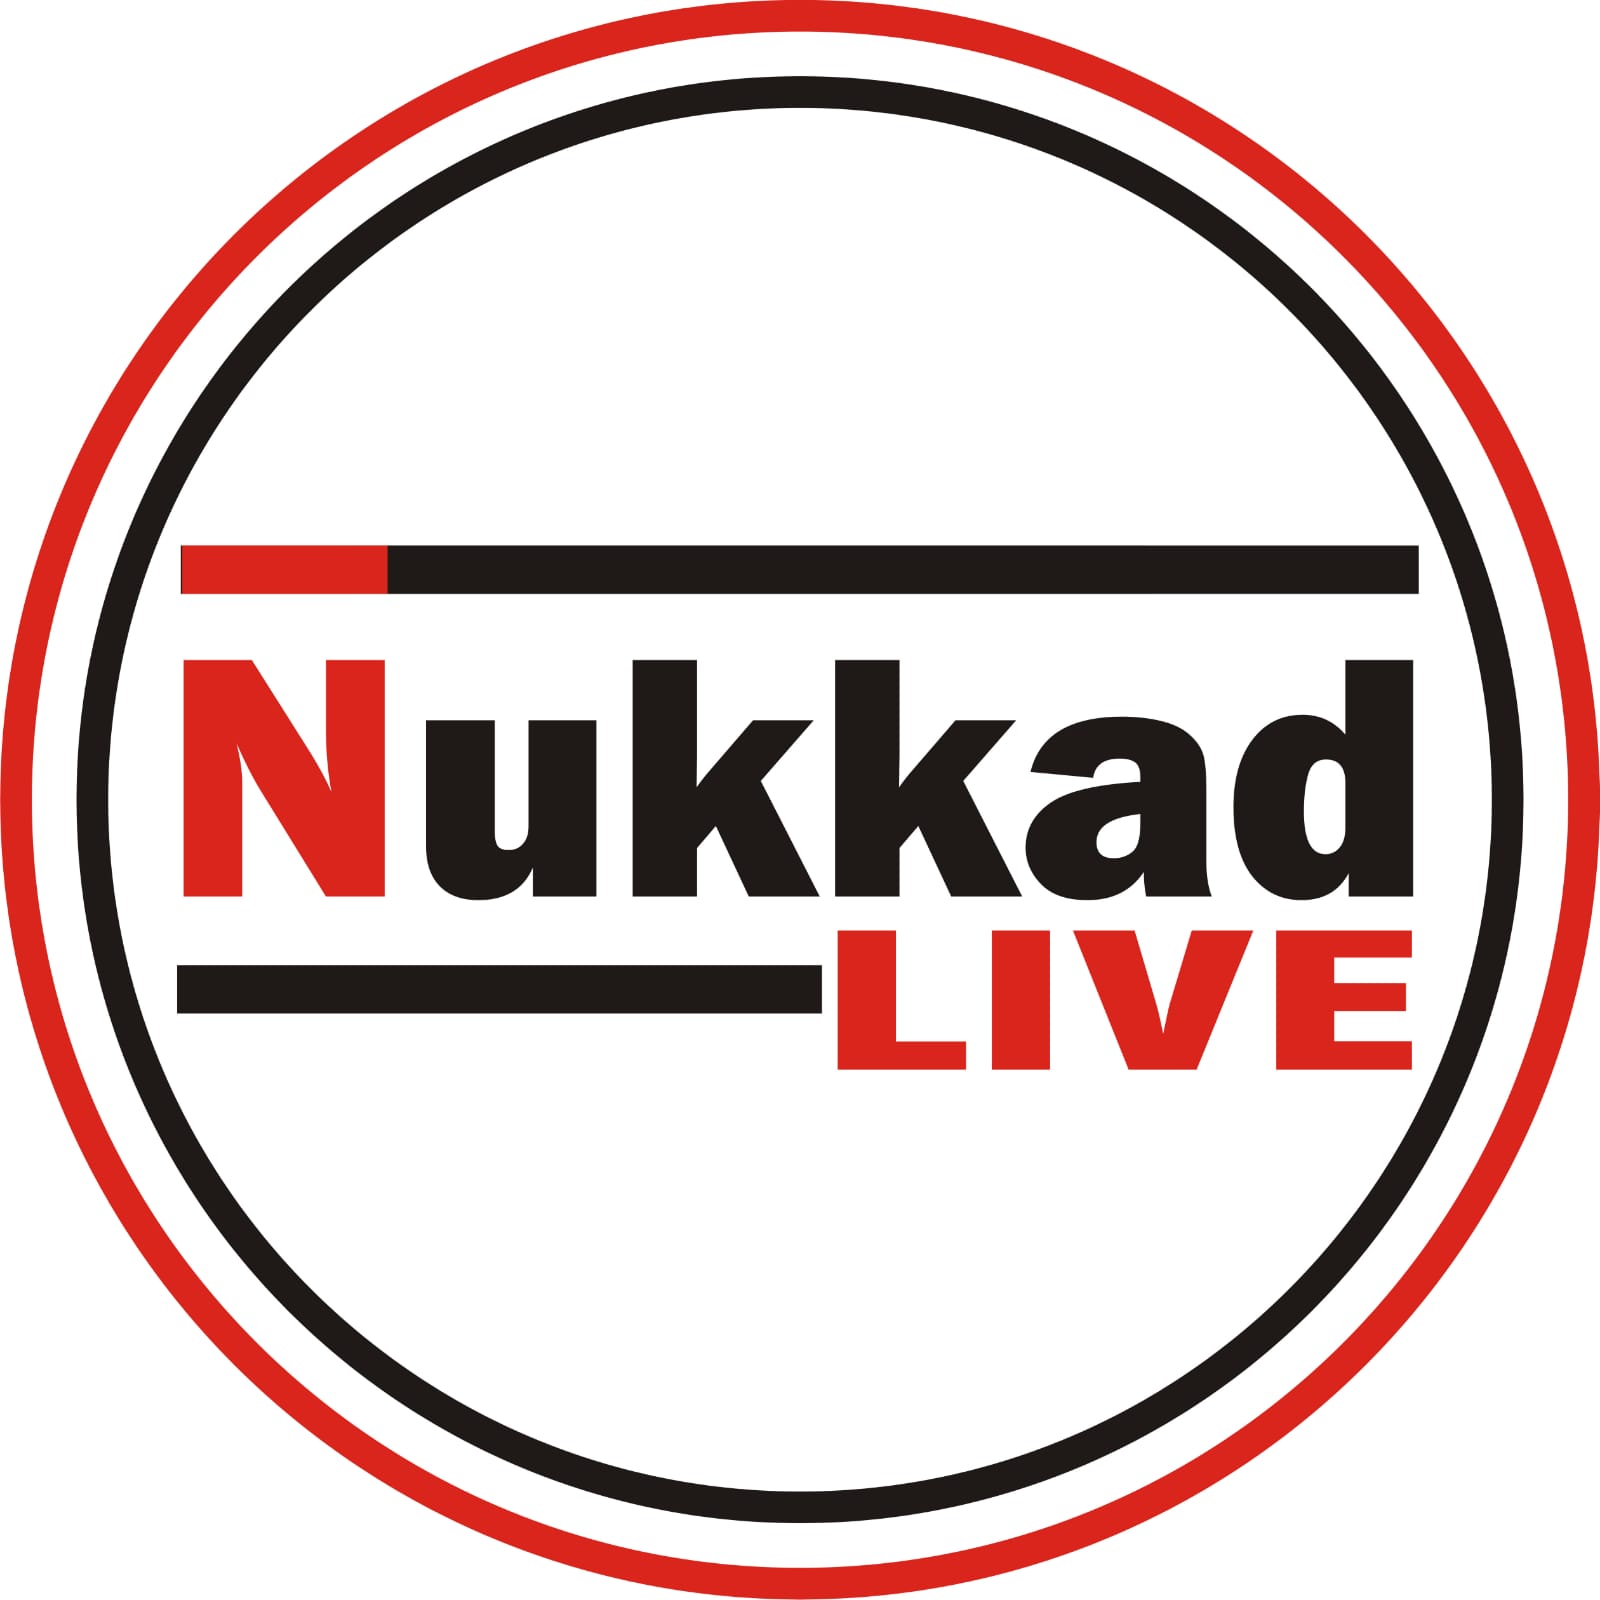 Nukkad Live - Letest News Updates